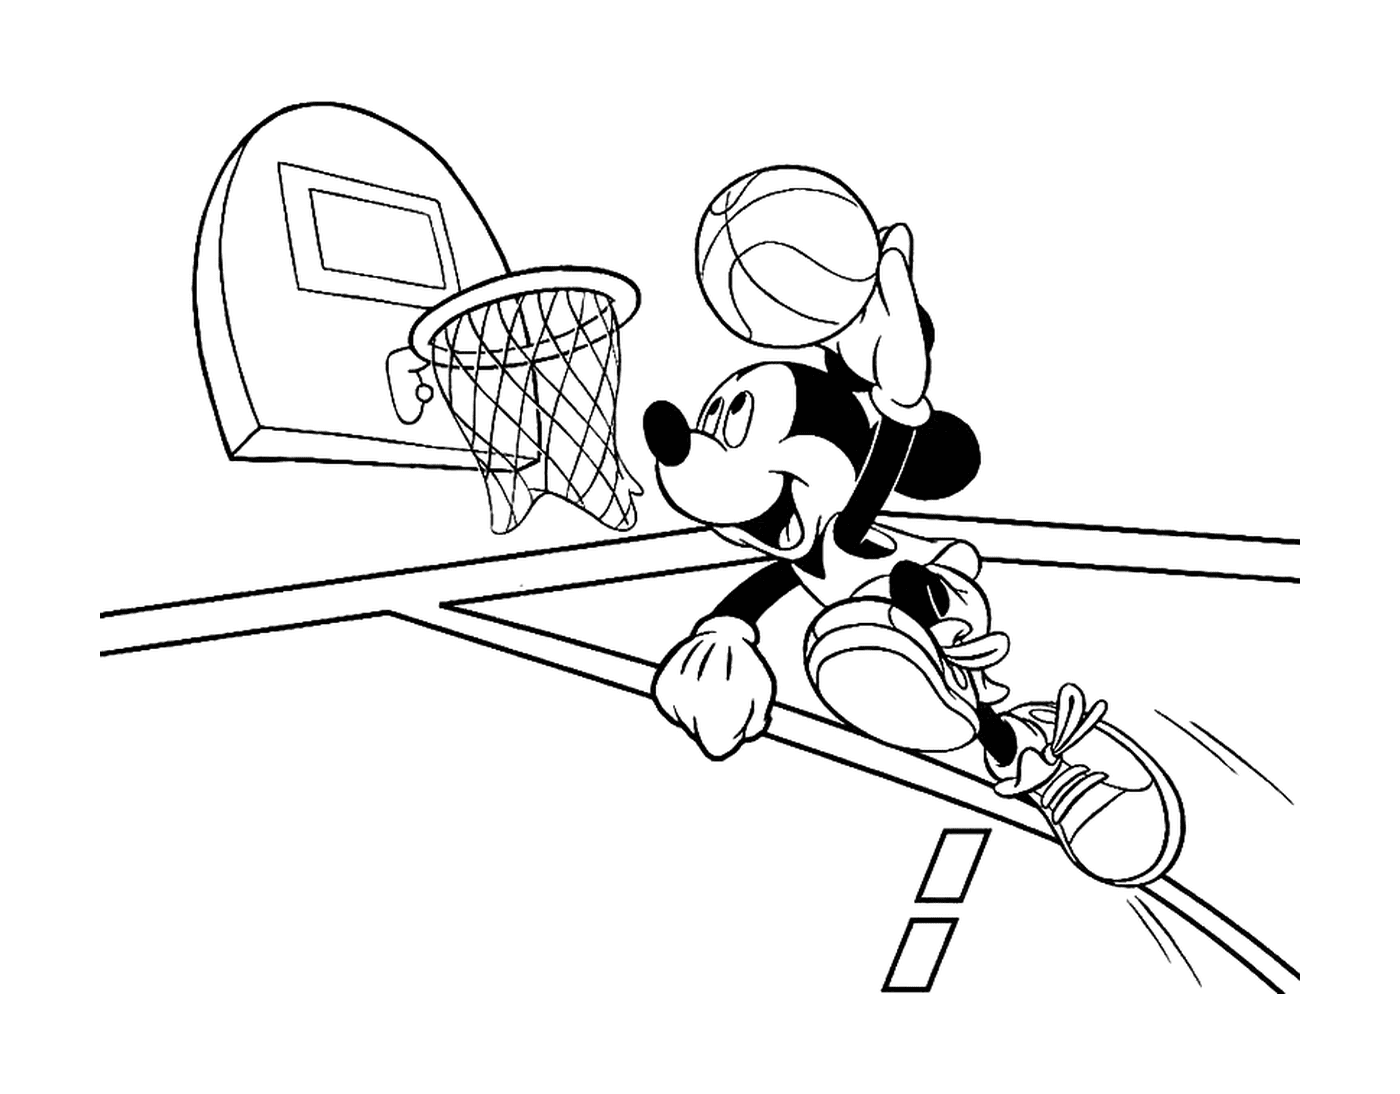  Микки играет в баскетбол 